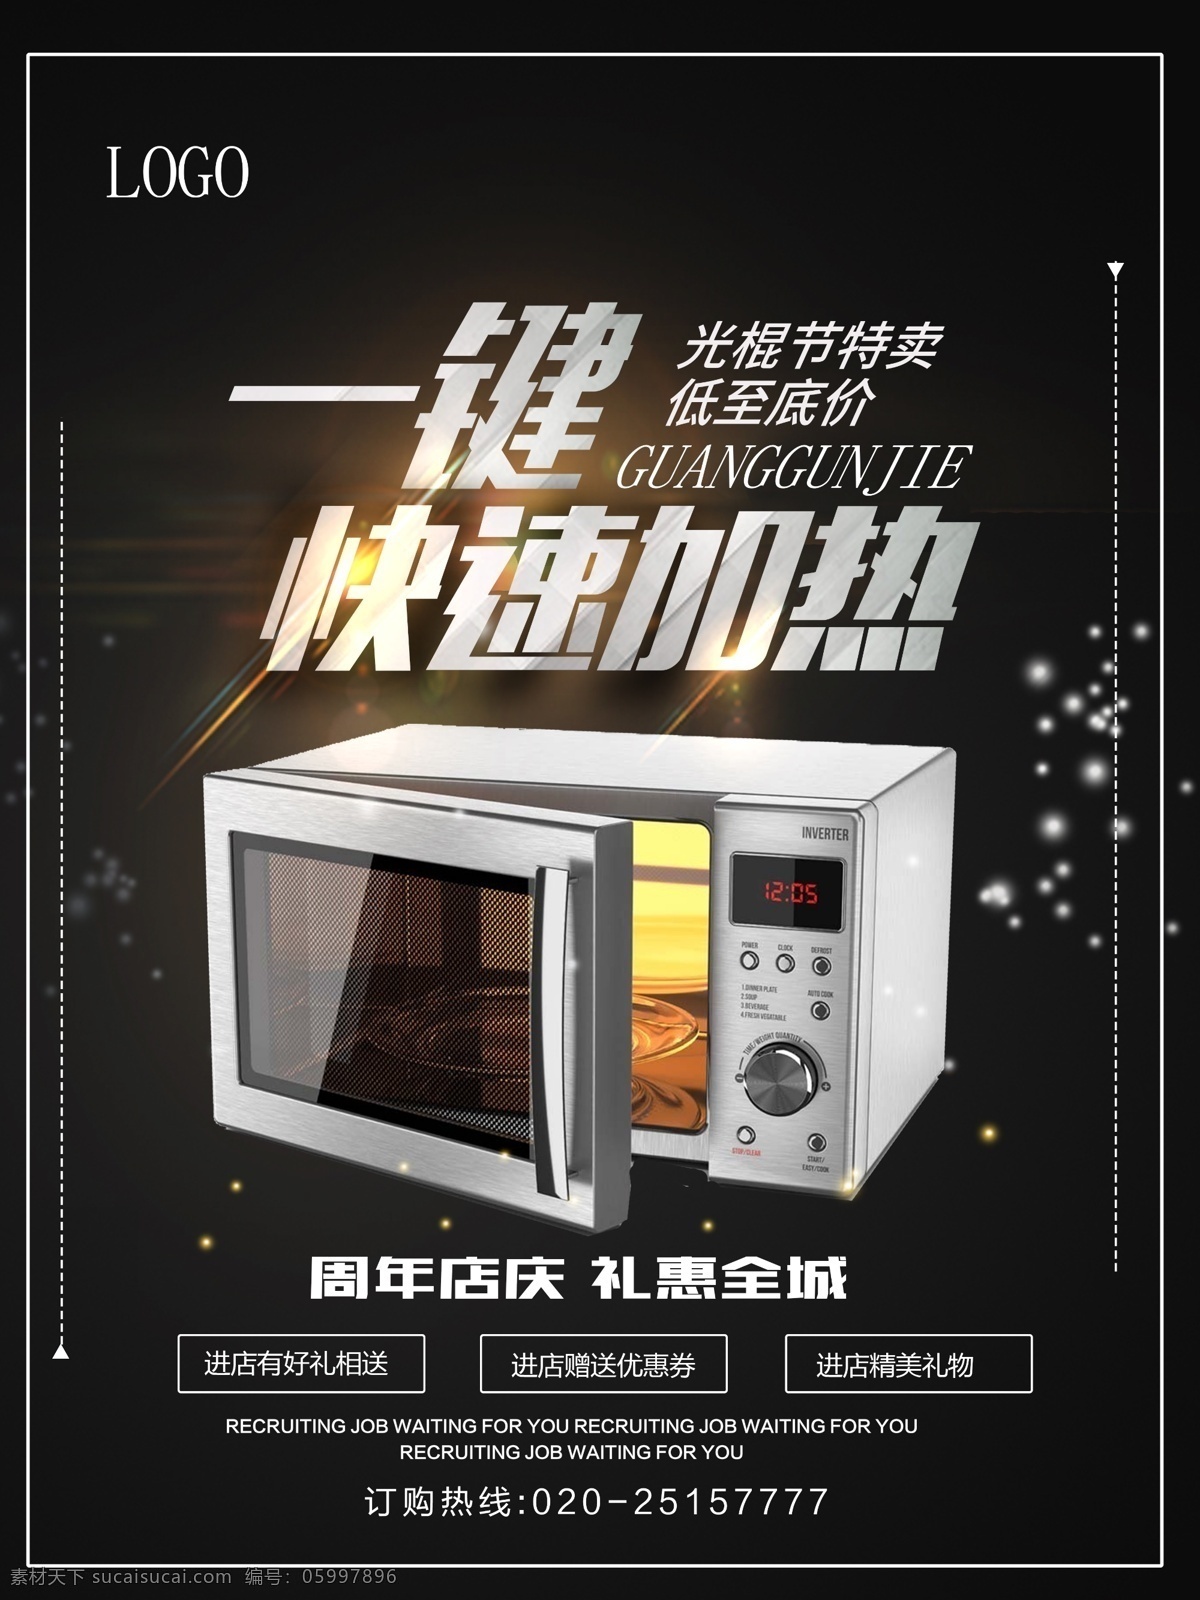 光棍 节电器 促销 海报 电视 微波炉 洗衣机 电冰箱 双11特卖 品牌盛典